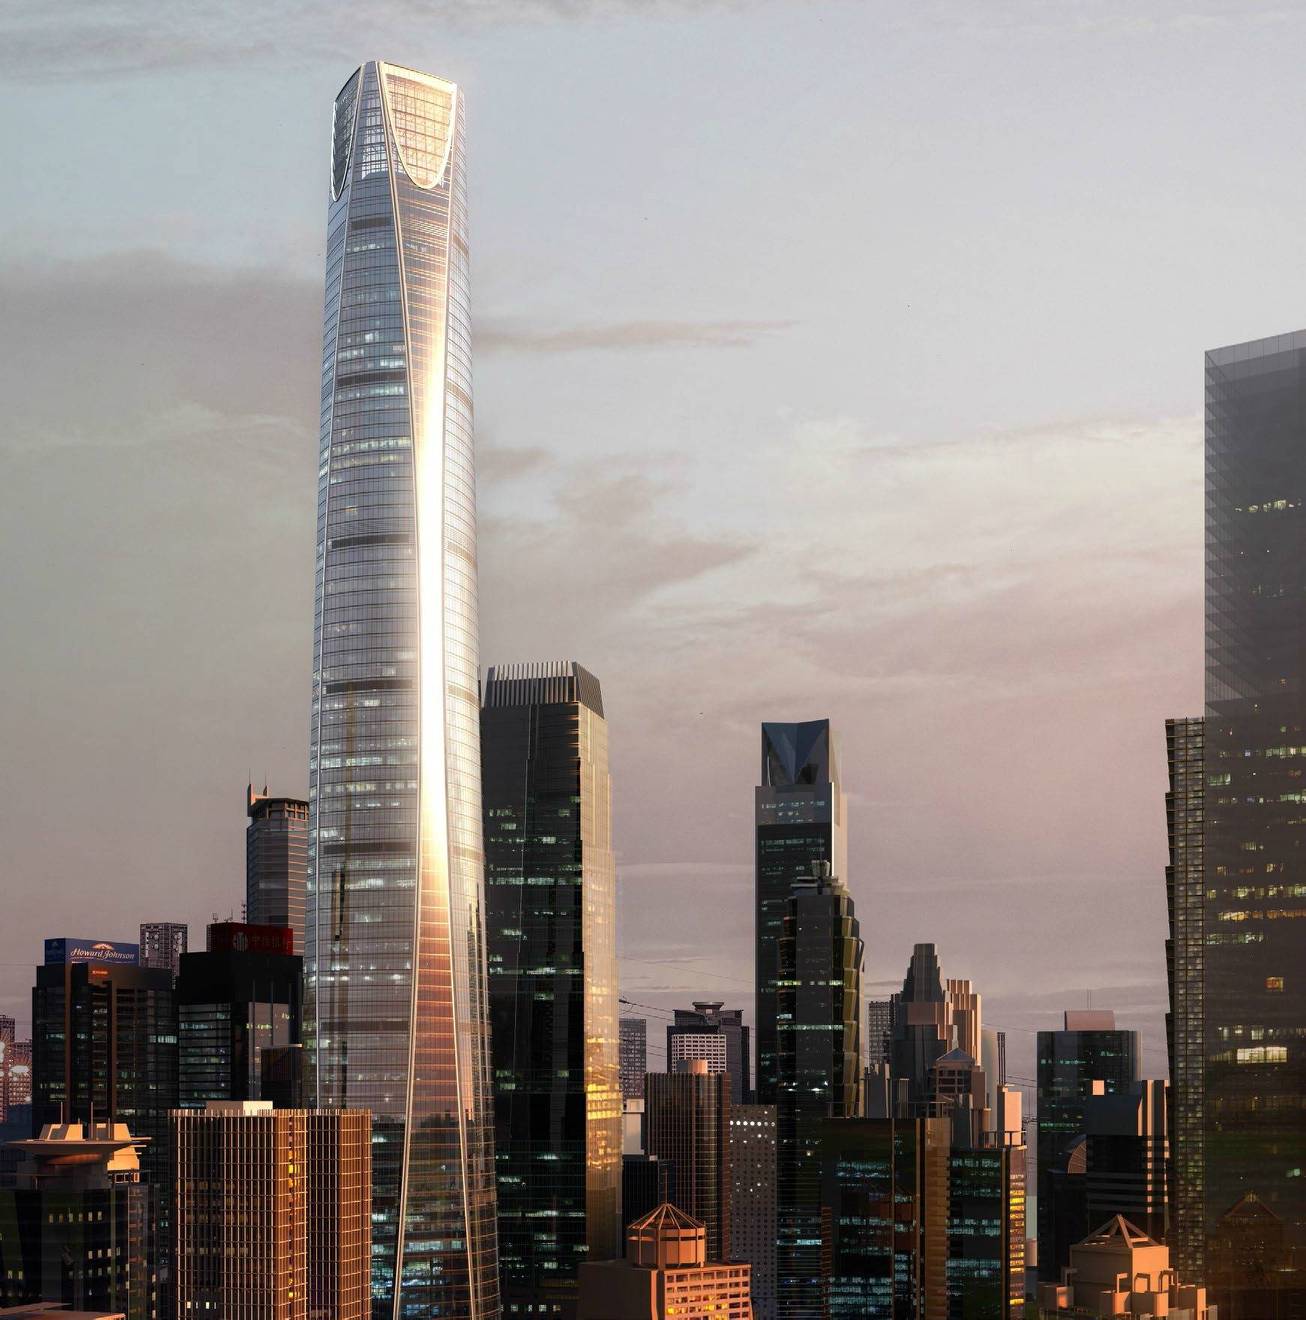 重庆正积极打造的一座新高楼,高431米,预计2022年竣工